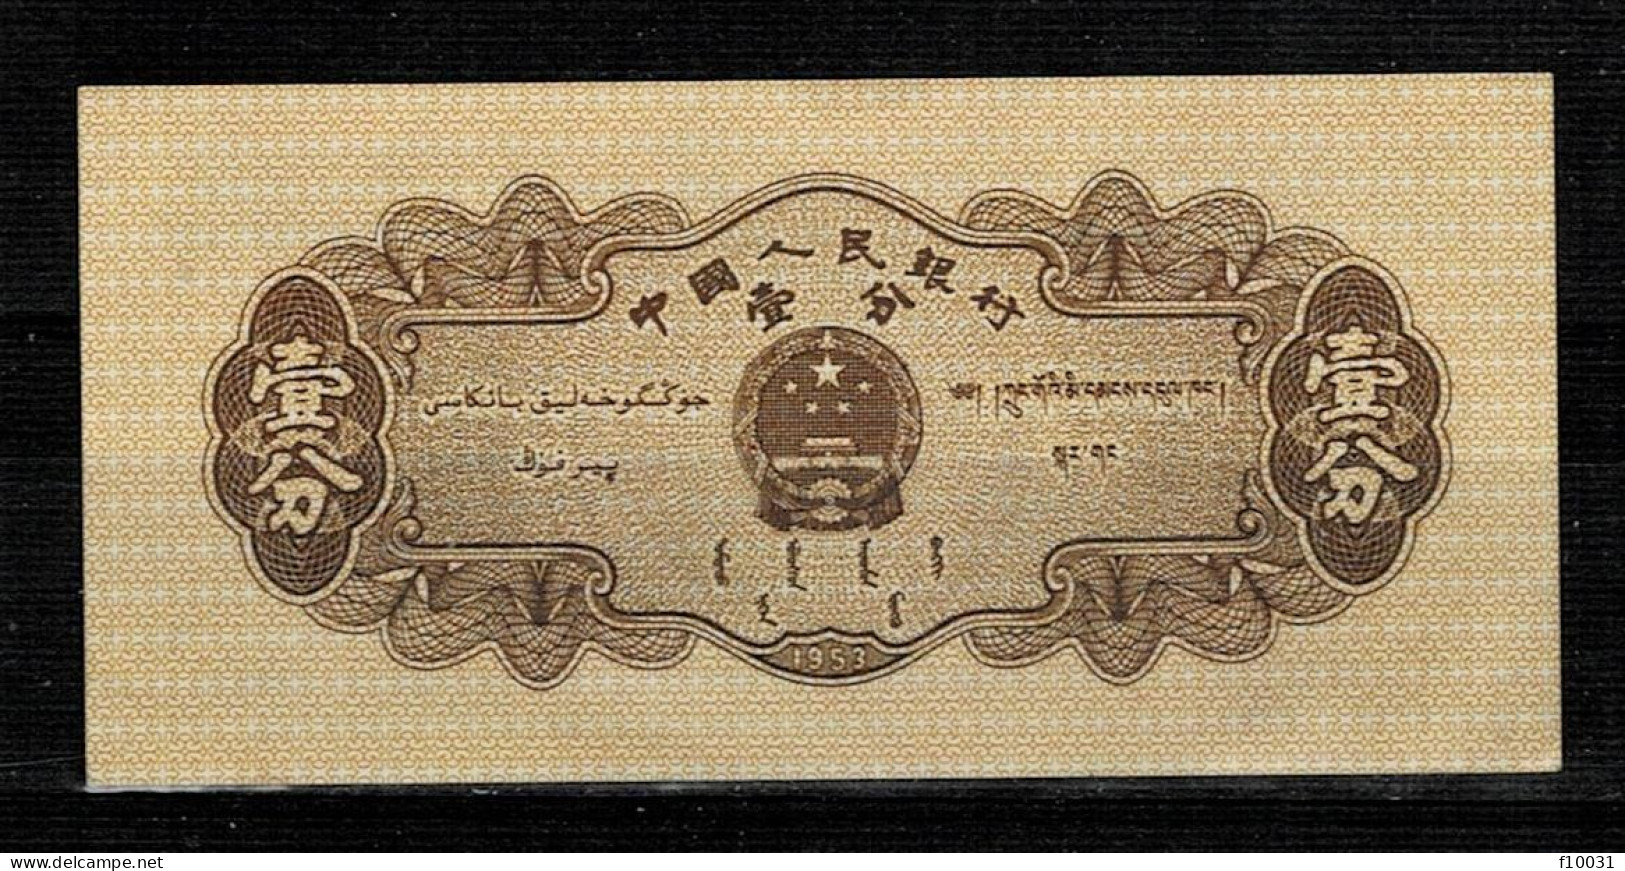 CHINE 1 FEN UNC P 860 - Kilowaar - Bankbiljetten